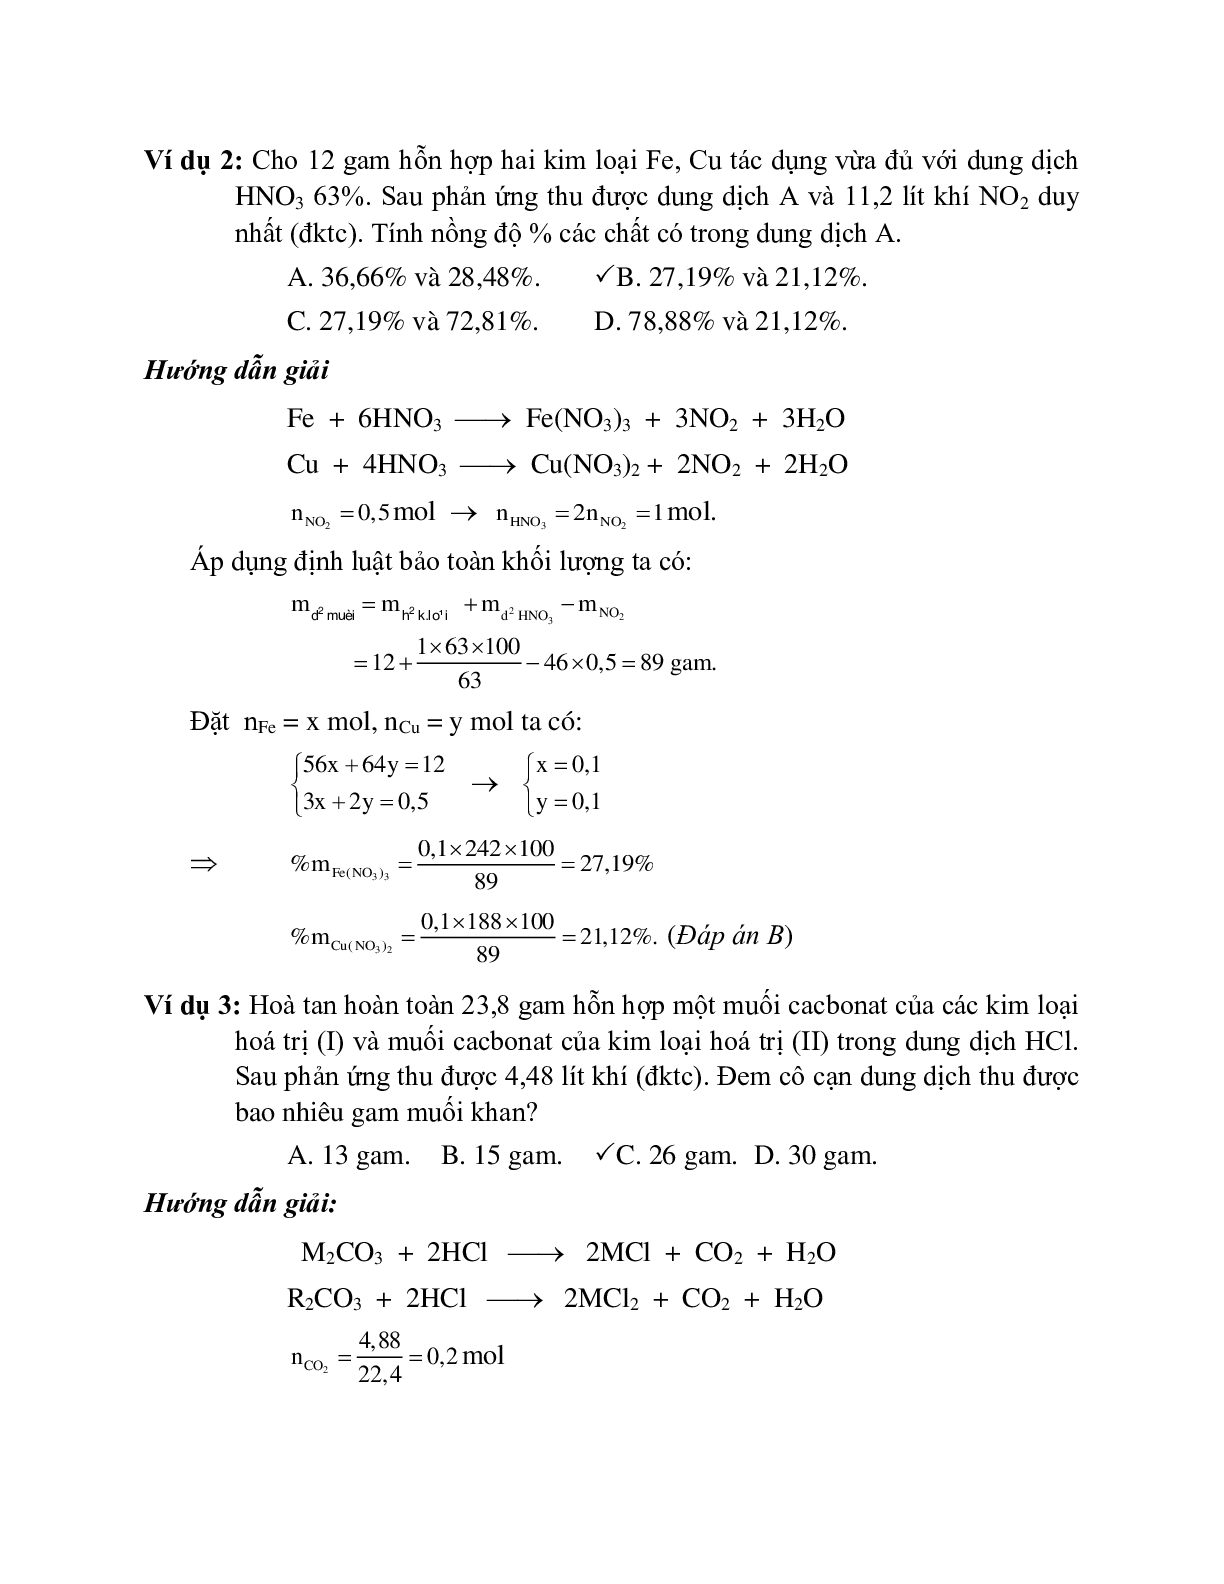 Lý thuyết, bài tập về phương pháp bảo toàn khối lượng có đáp án, chọn lọc (trang 2)